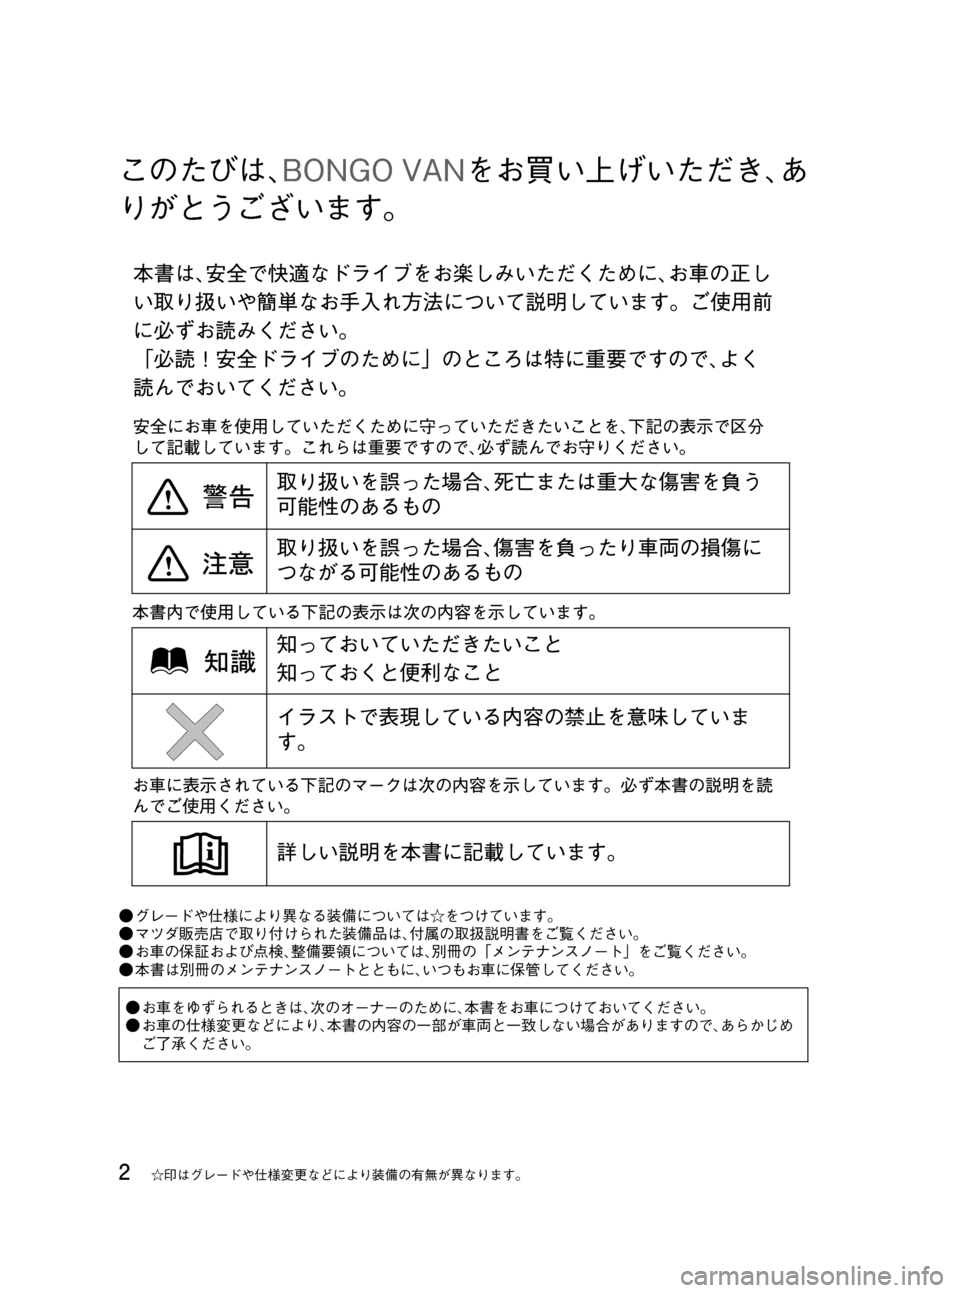 MAZDA MODEL BONGO VAN 2012  取扱説明書 (in Japanese) Black plate (2,1)
このたびは､BONGO VANをお買い上げいただき､あ
りがとうございます。
●グレードや仕様により異なる装備については☆をつけています